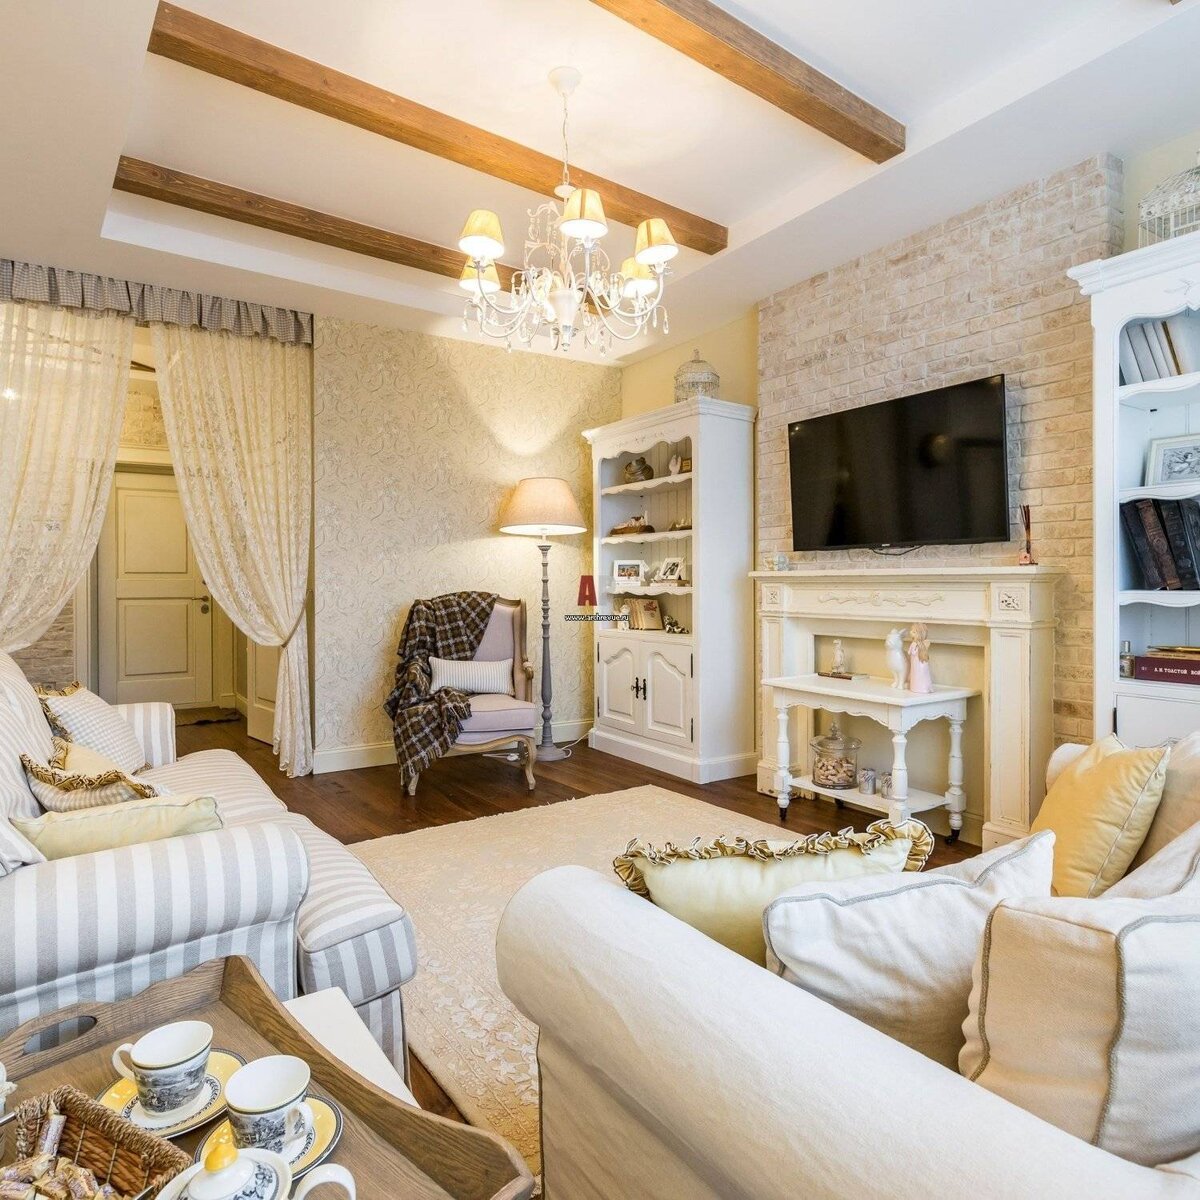 «Прованс» – один из самых популярных стилей для оформления домашнего интерьера, который сочетает в себе элементы классики и деревенского шика.-2